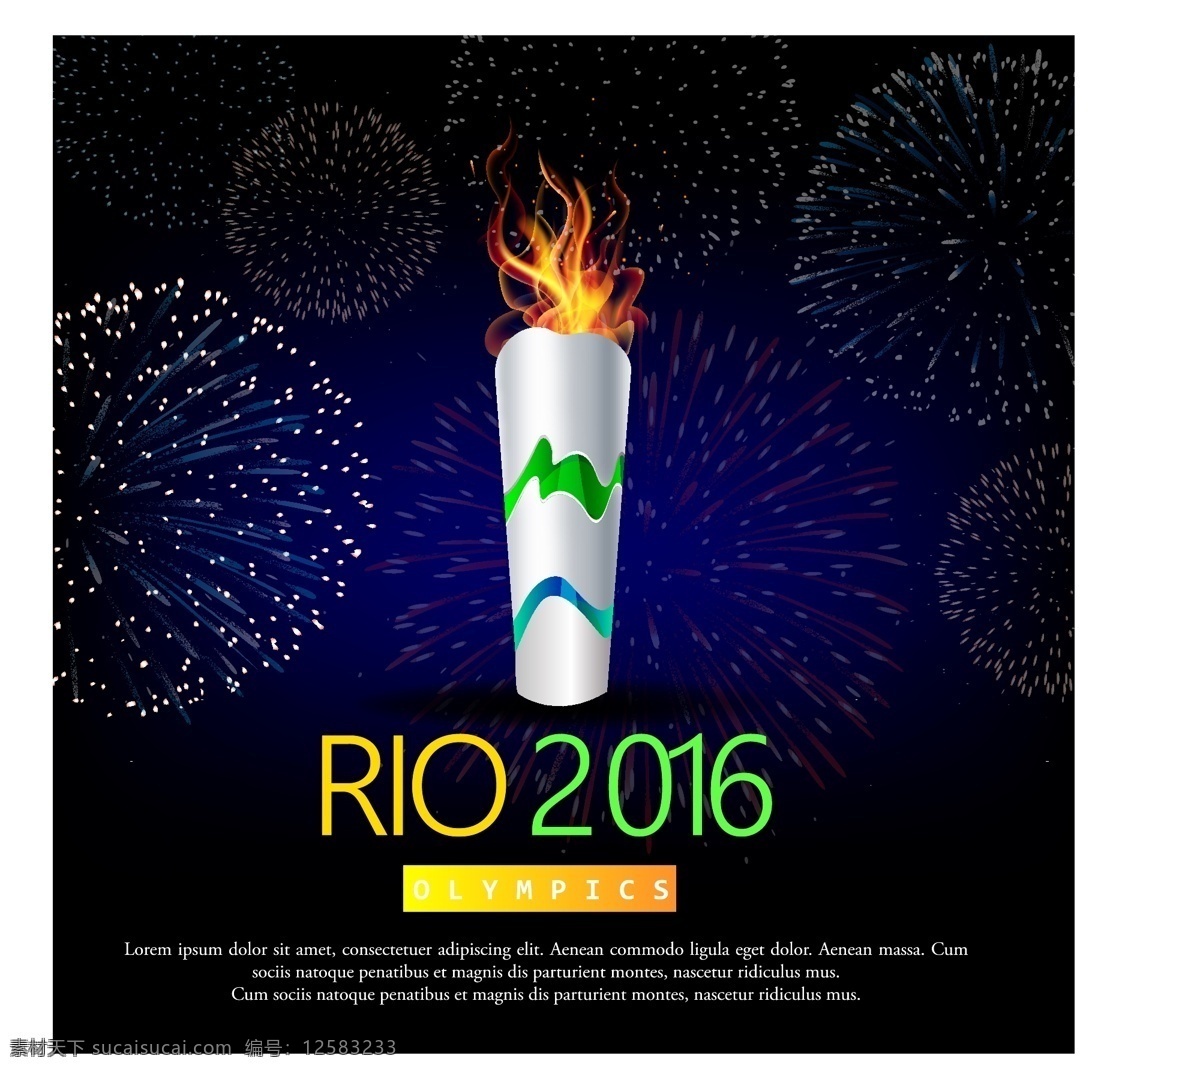 烟花 背景 奥运 火炬 巴西 奥运会 矢量图 火焰 蓝色背景 背景夏季 体育健身 健康蓝色 体育赛事 巴西背景 rio里约 2016 巴西奥运会 黑色